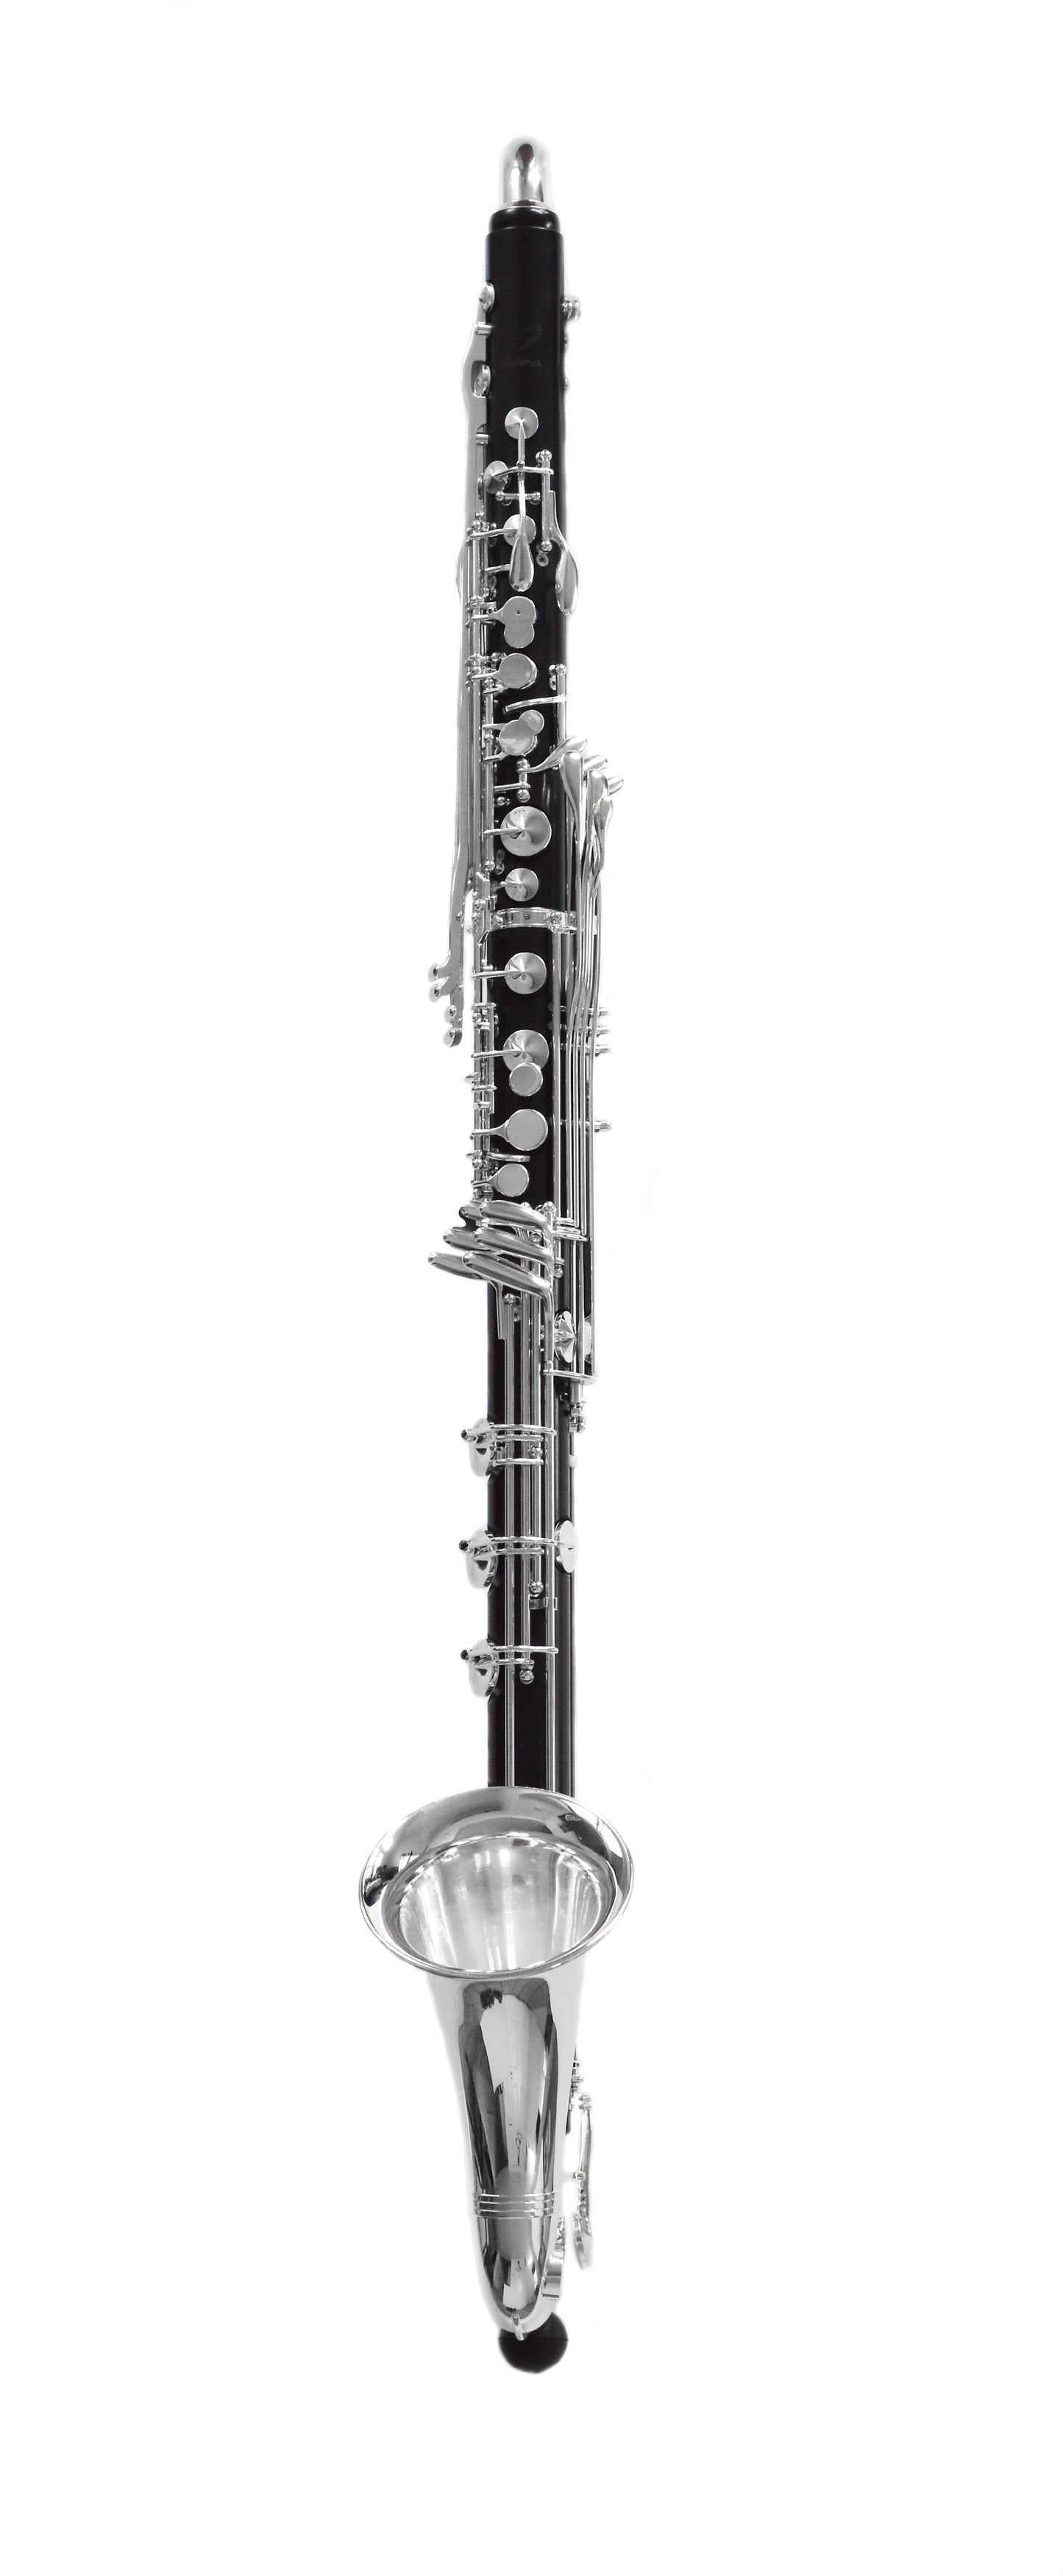 Royal Global Polaris Bass Clarinet